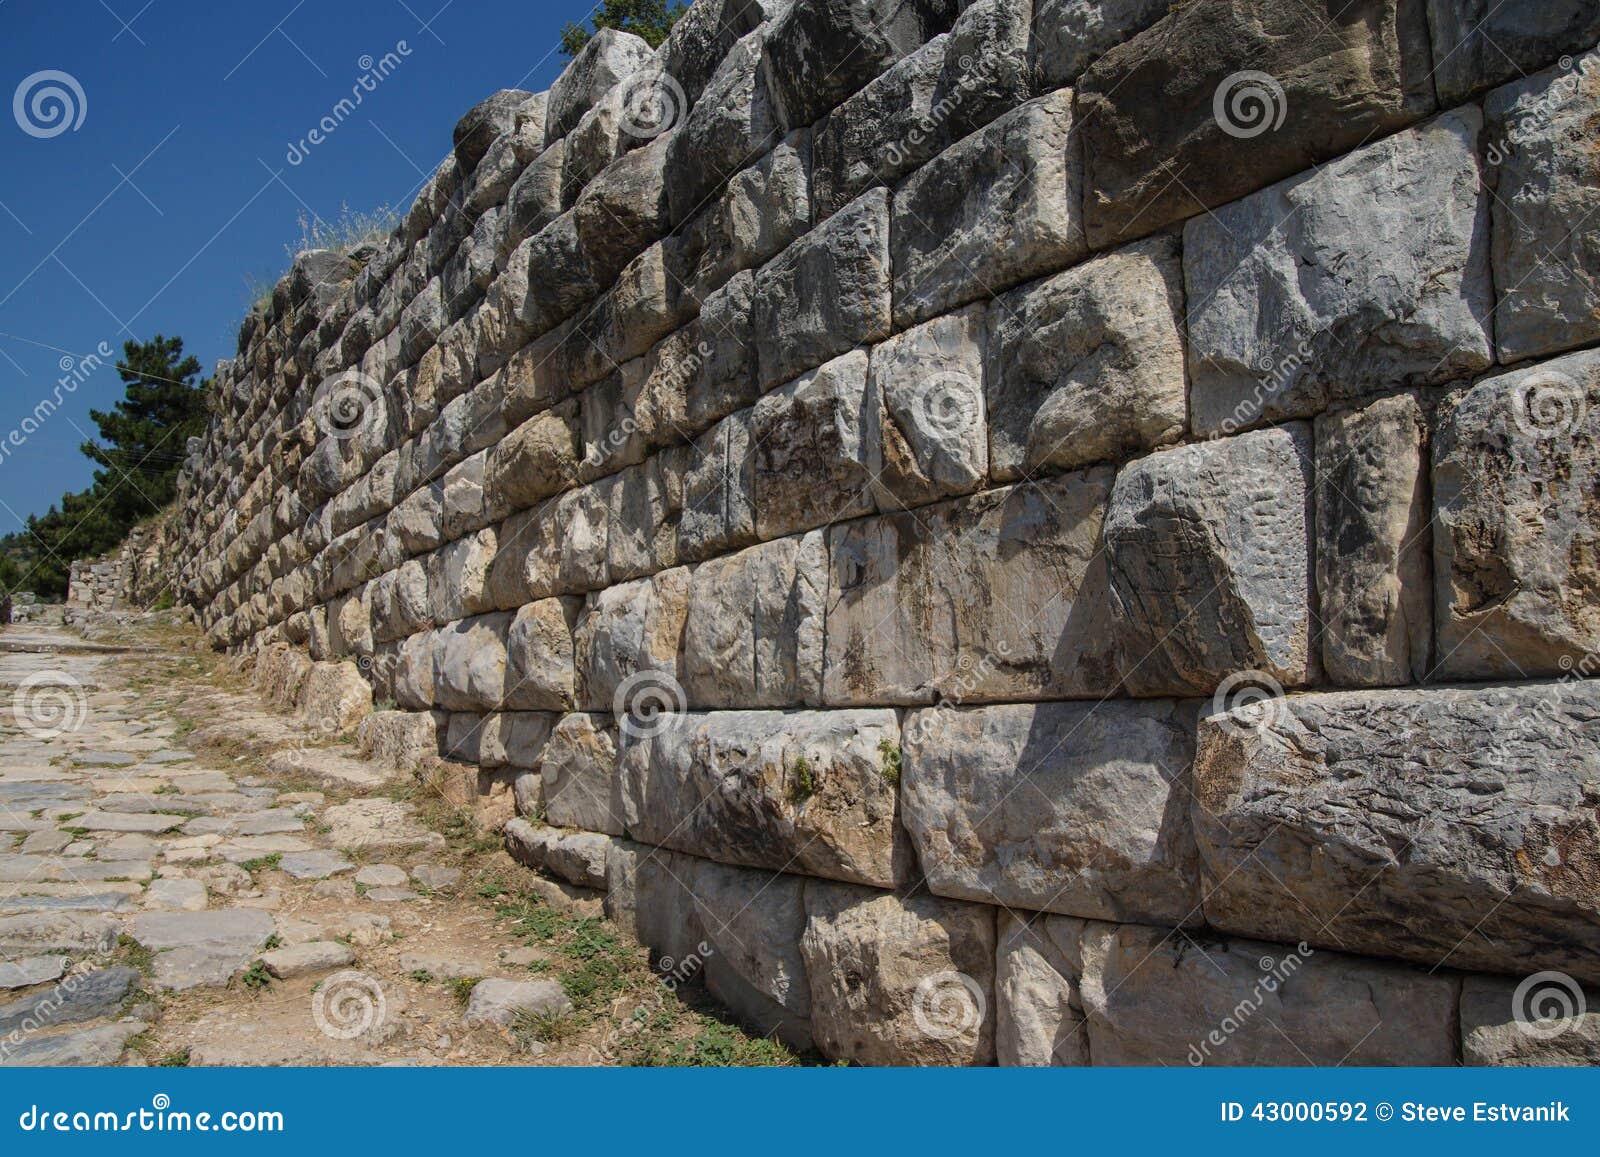 Massive Ashlar Masonry Wall Stock Photo - Image of block, rome: 43000592